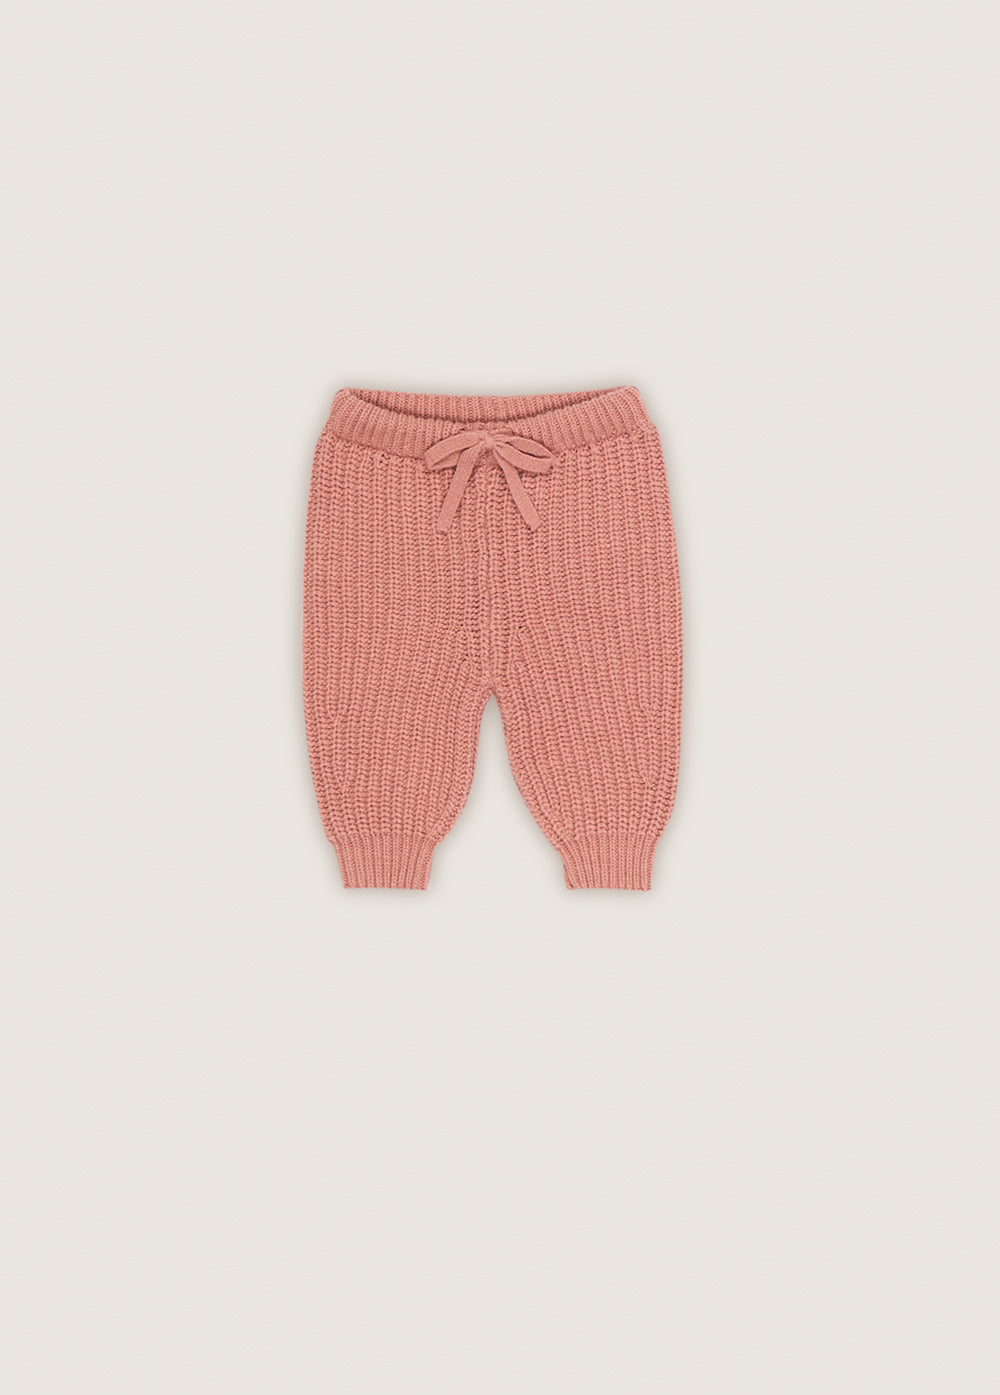 Babies' Rib Knit Pants in Rose Smoke